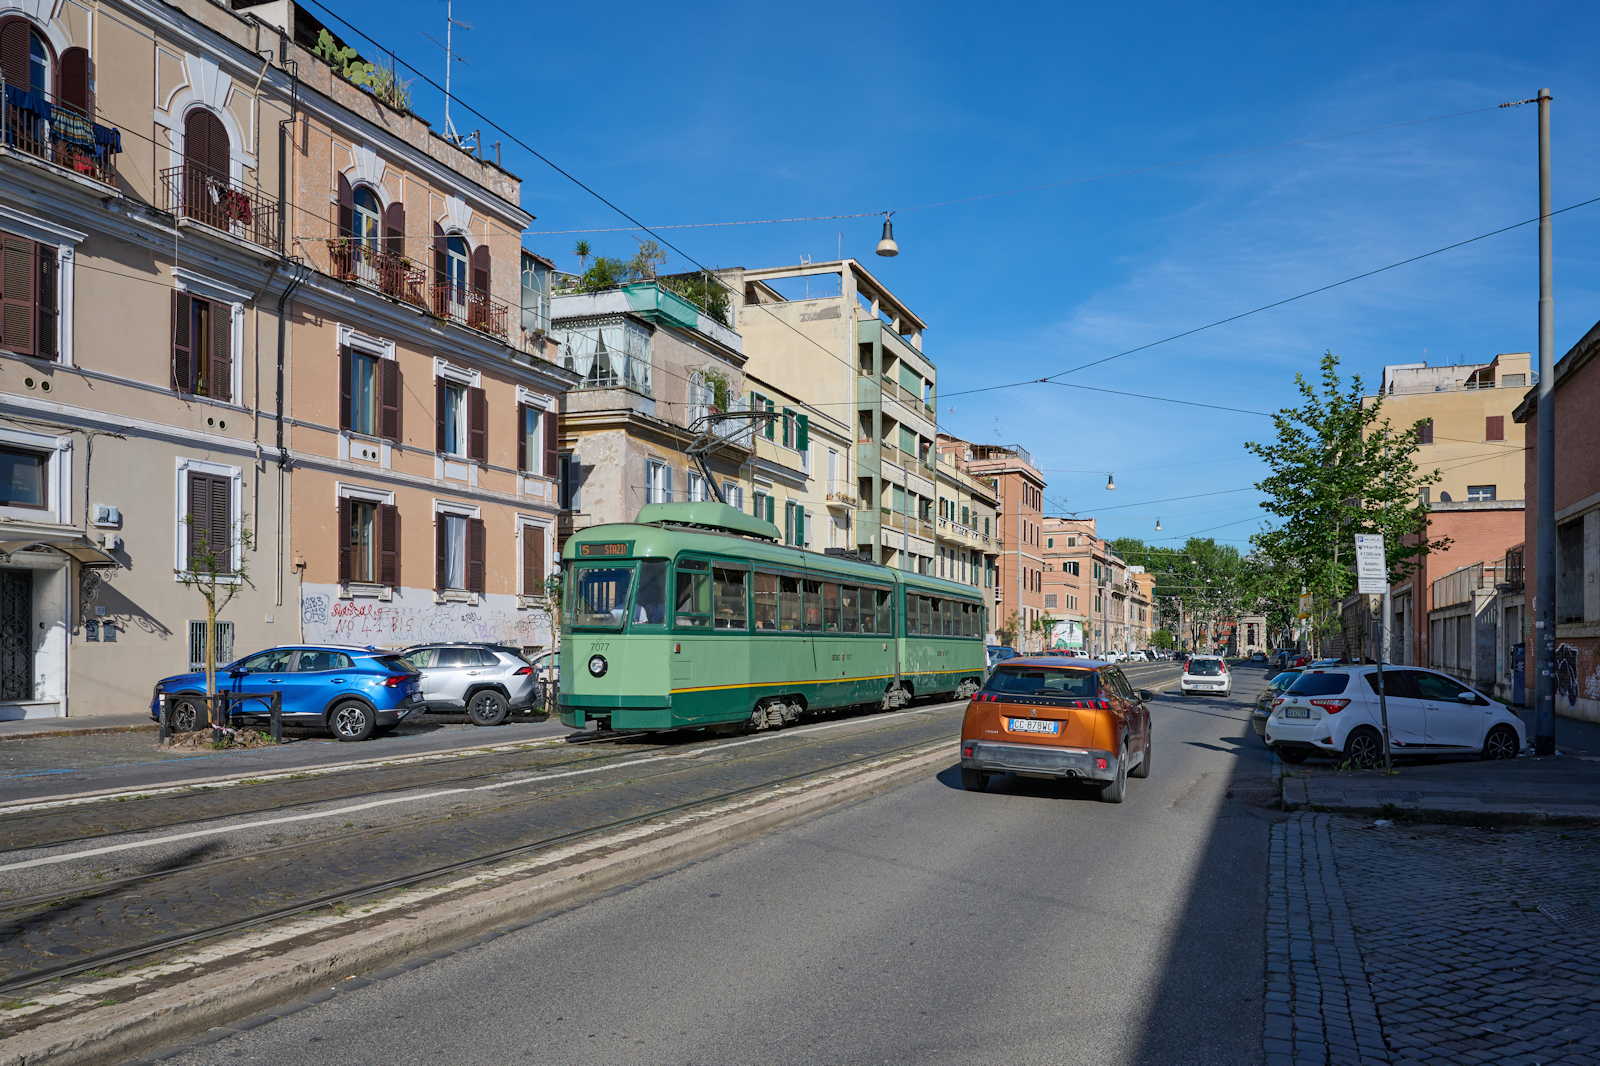 Wagen 7077 der Straßenbahn Rom war am 05.05.2024 auf der Linie 5 unterwegs von der Piazza dei Gerani zum Bahnhof Termini. Gerade hat der Wagen die Haltestelle an der Porta Maggiore verlassen, welche im Hintergrund zu sehen ist, und befand sich in der Via di Porta Maggiore.
(Autokennzeichen ist verändert)  